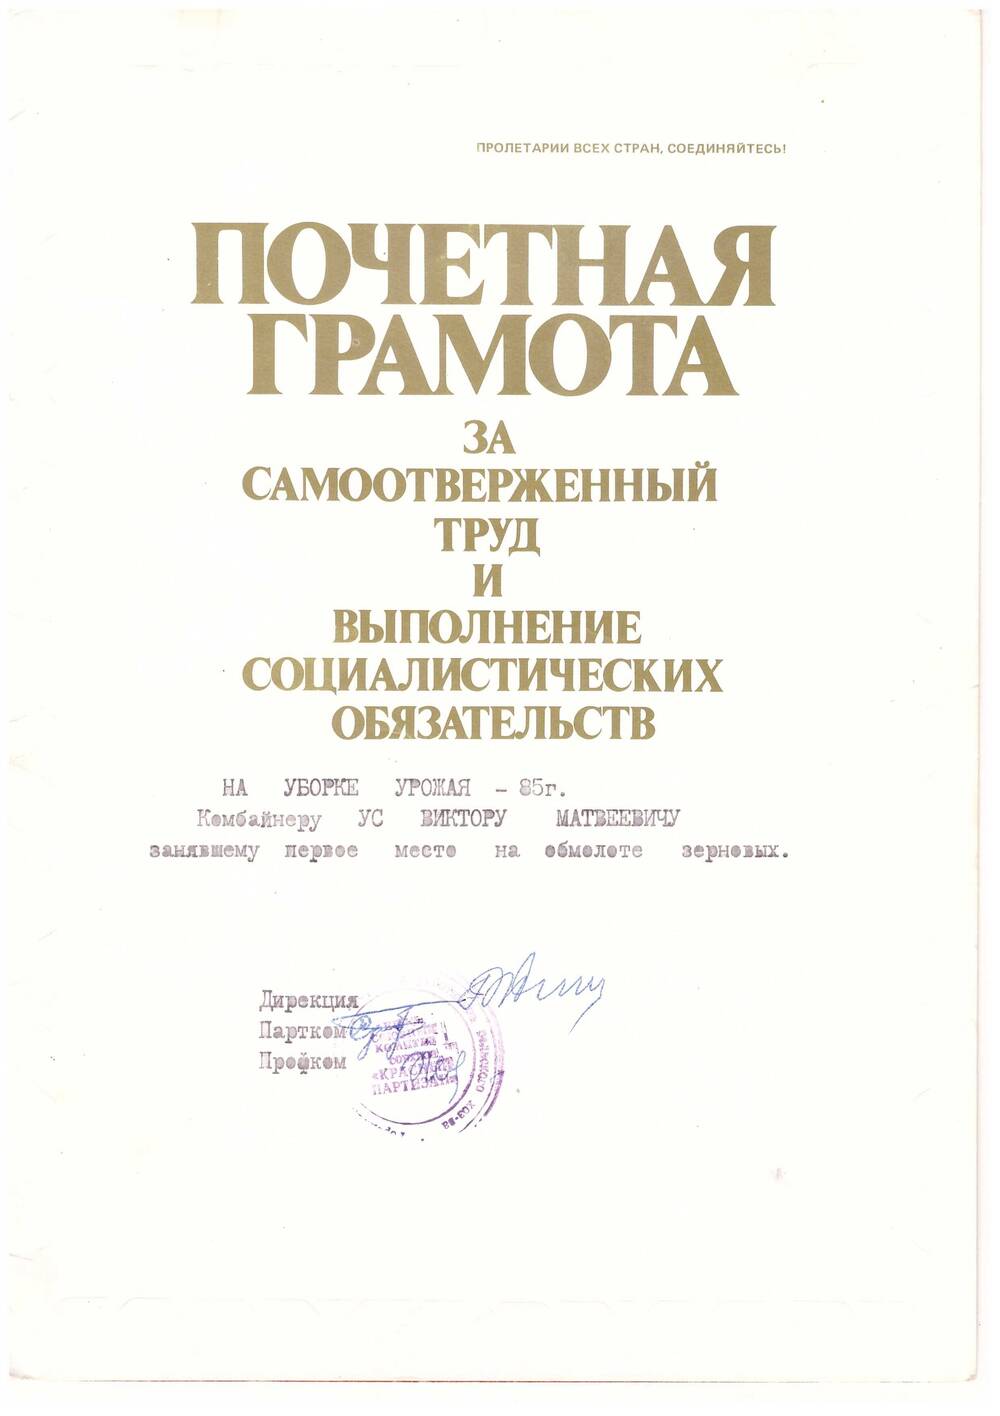 Почетная грамота Ус Виктора  Матвеевича, комбайнера, за уборку урожая в 1985 году